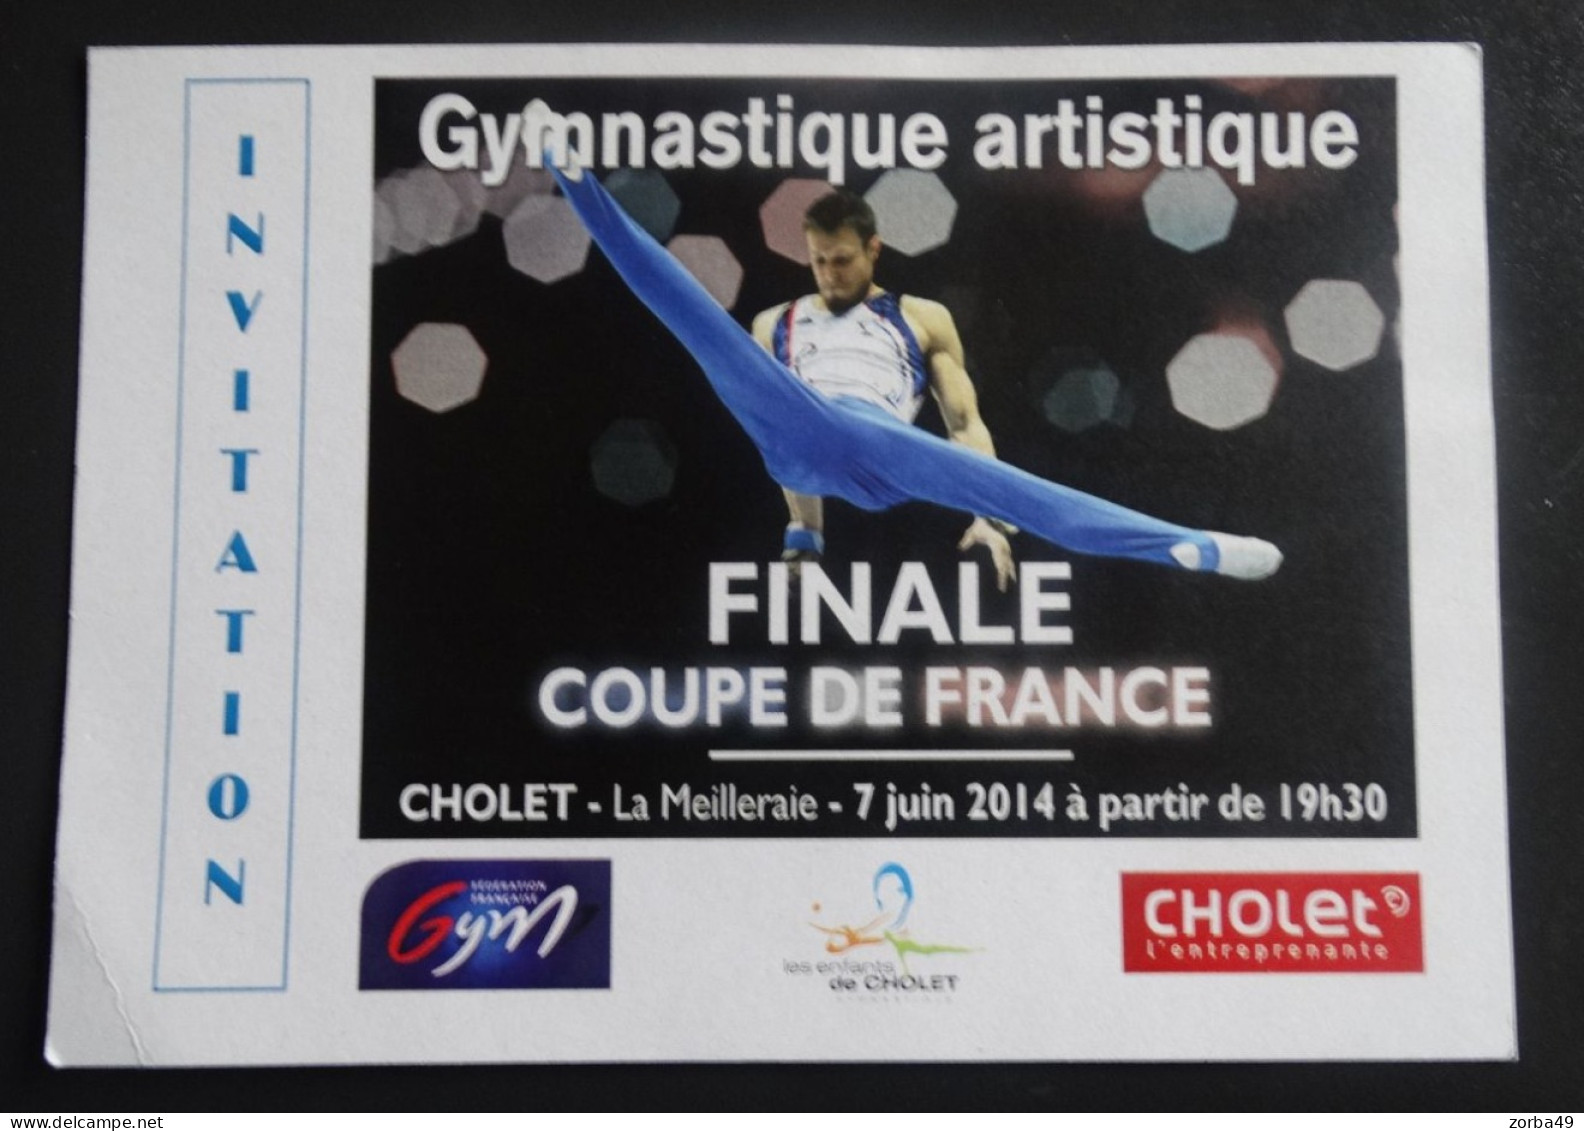 CHOLET Invitation Finale Coupe De France De Gymnastique Artistique 2014 - Gymnastique